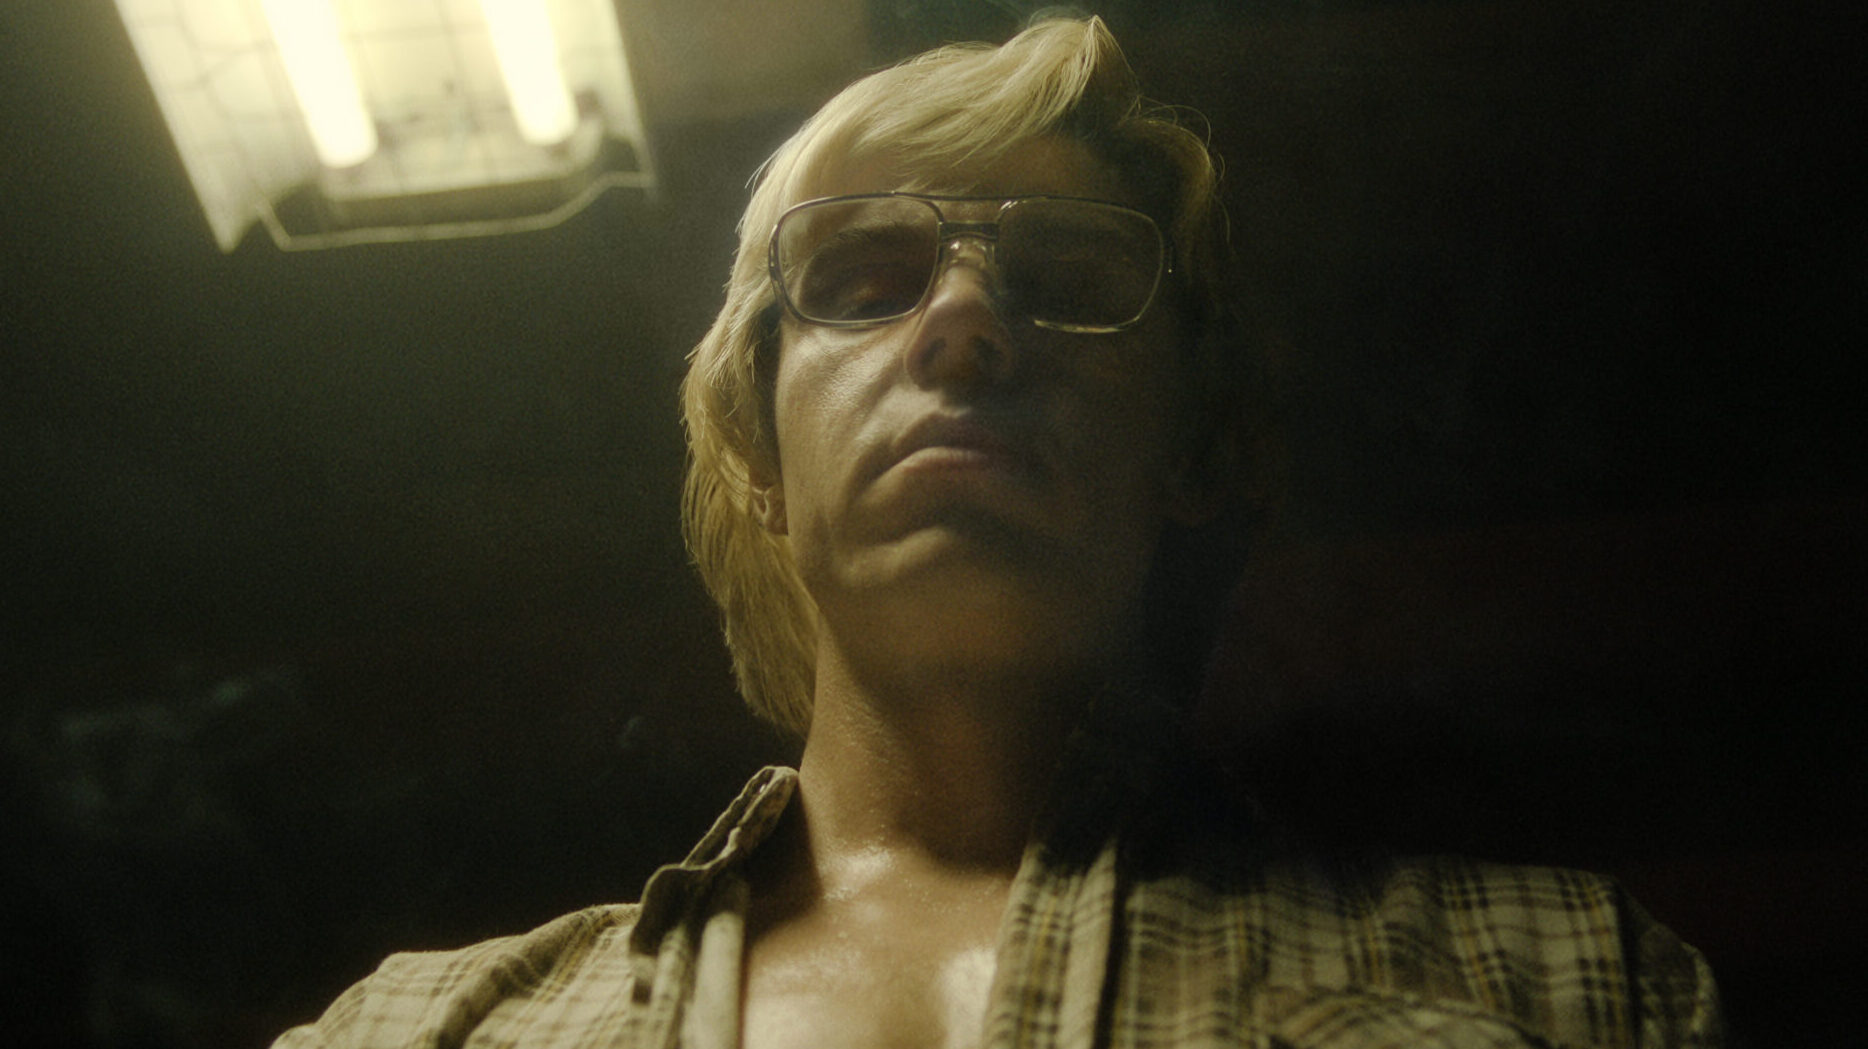 Image of Evan Peters as serial killer Jeffrey Dahmer in Netflix's “Dahmer – Monster: The Jeffrey Dahmer Story